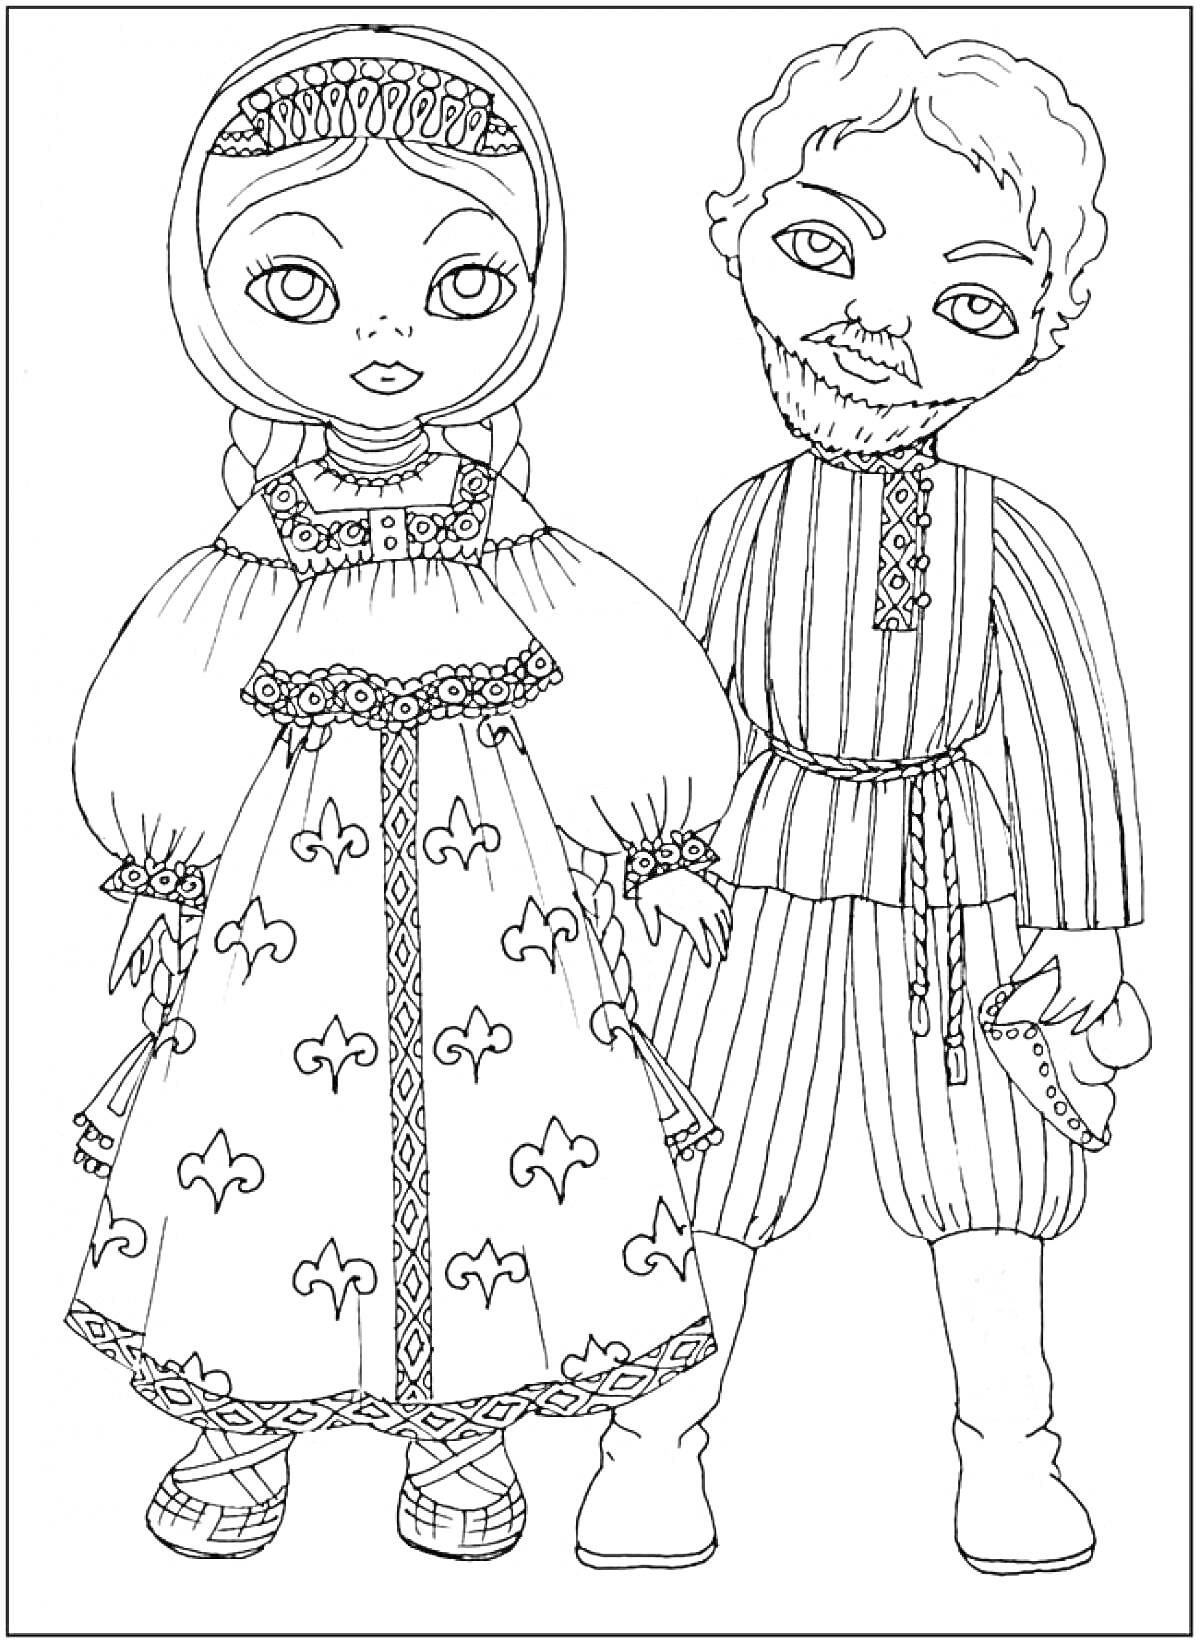 Раскраска Дети в традиционных костюмах, девочка в платье с народным орнаментом и косичками, мальчик в полосатой рубахе с поясом и шароварах